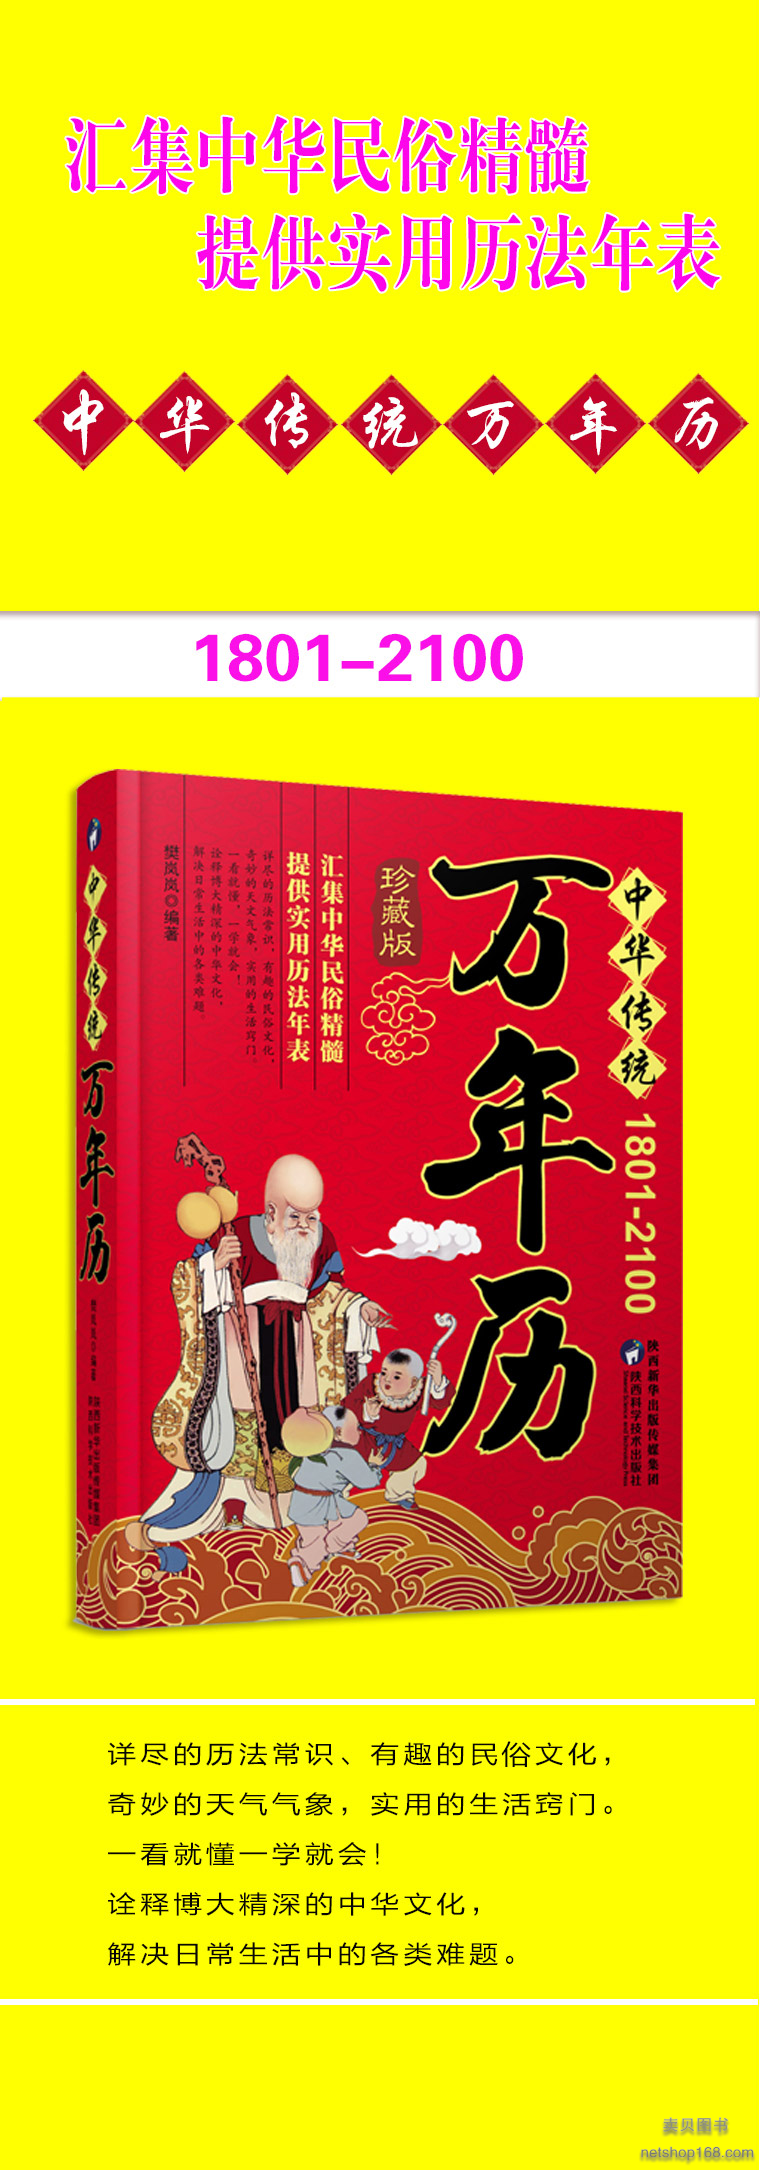 《万年历 (1801-2100) 中华传统节日民俗文化 农历公历对照表 中华万年历全书》